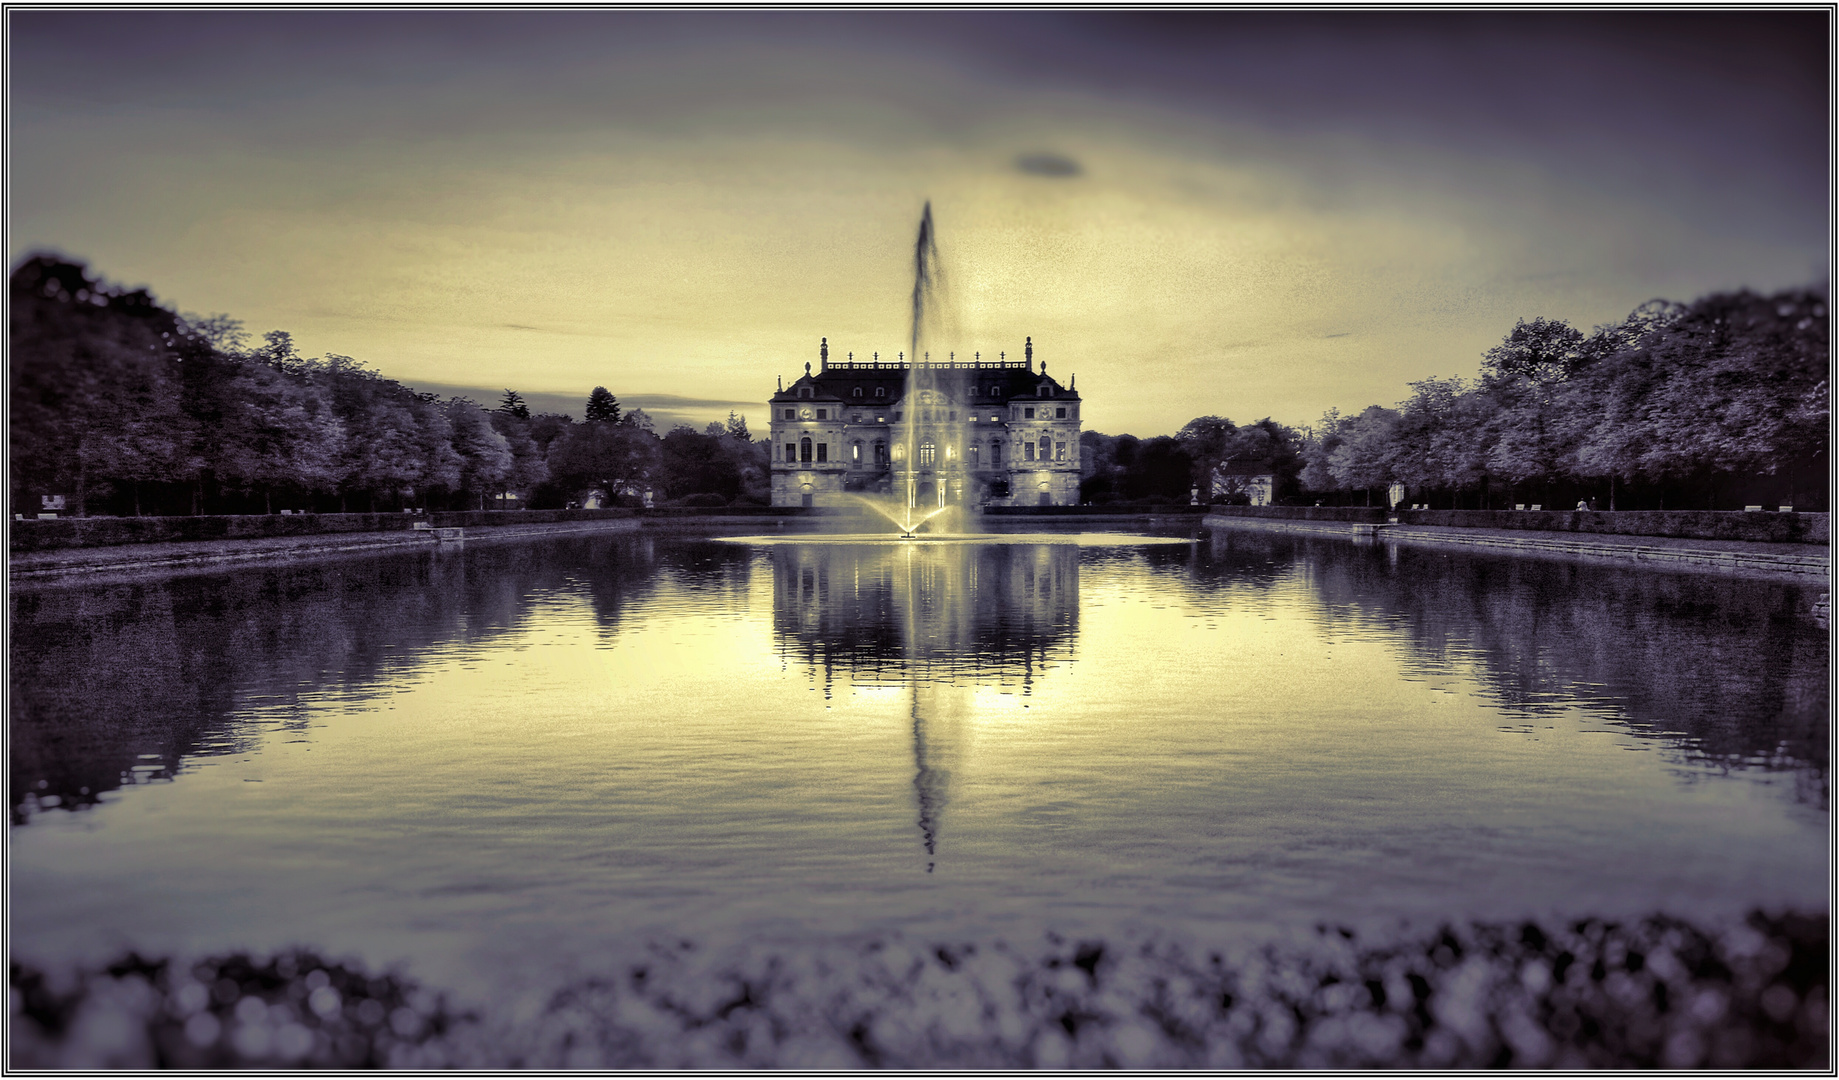 Palais im Großen Garten Dresden